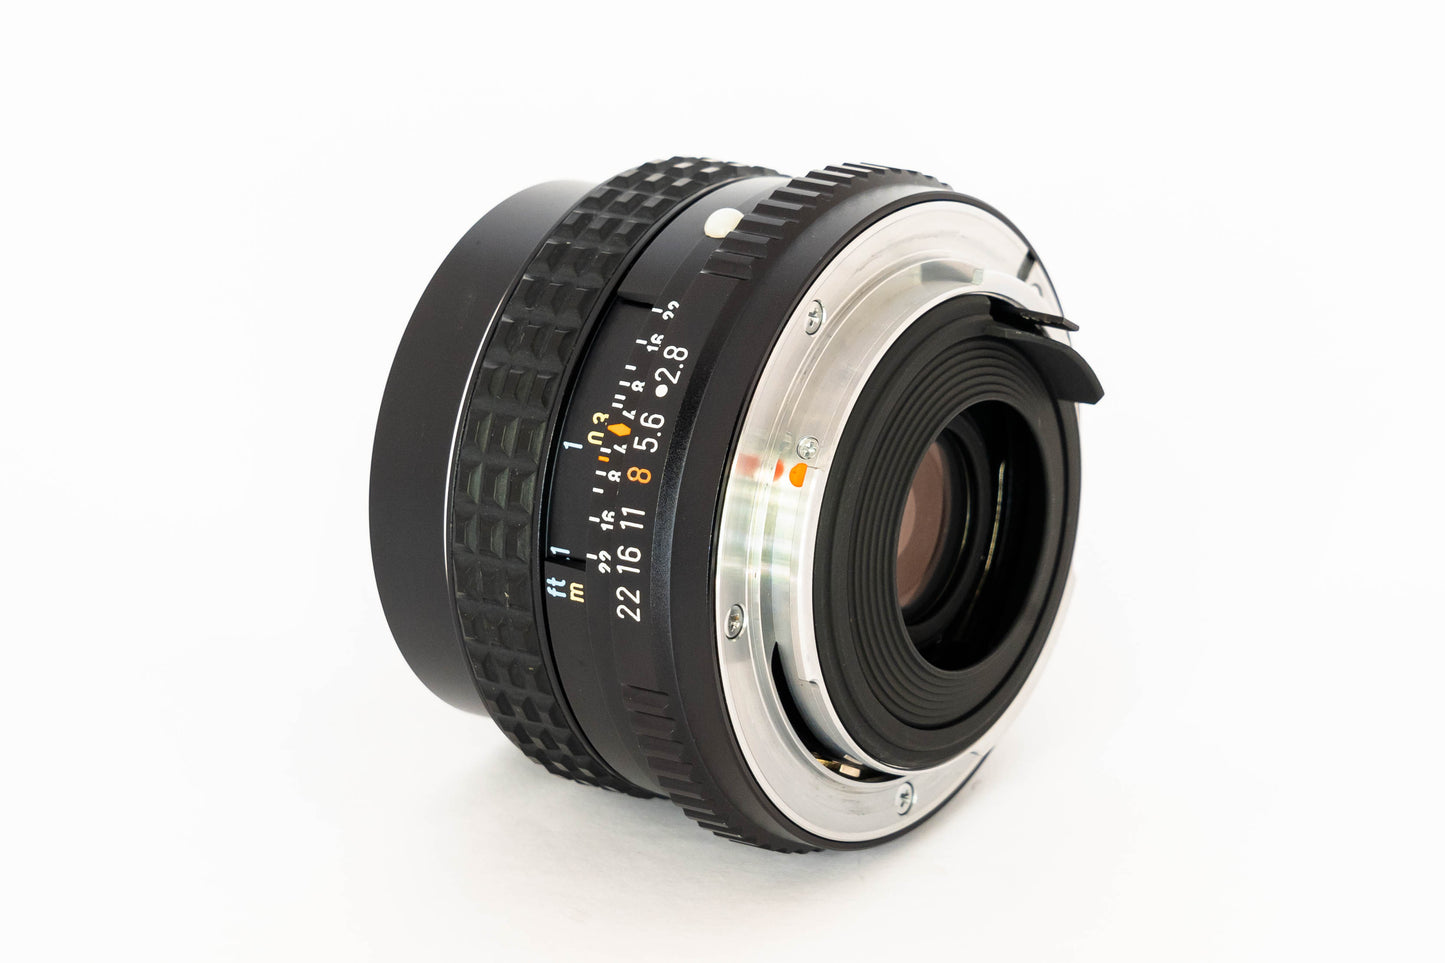 Pentax 35mm F/2.8 SMC Pentax-M manual focus K-Mount Lens